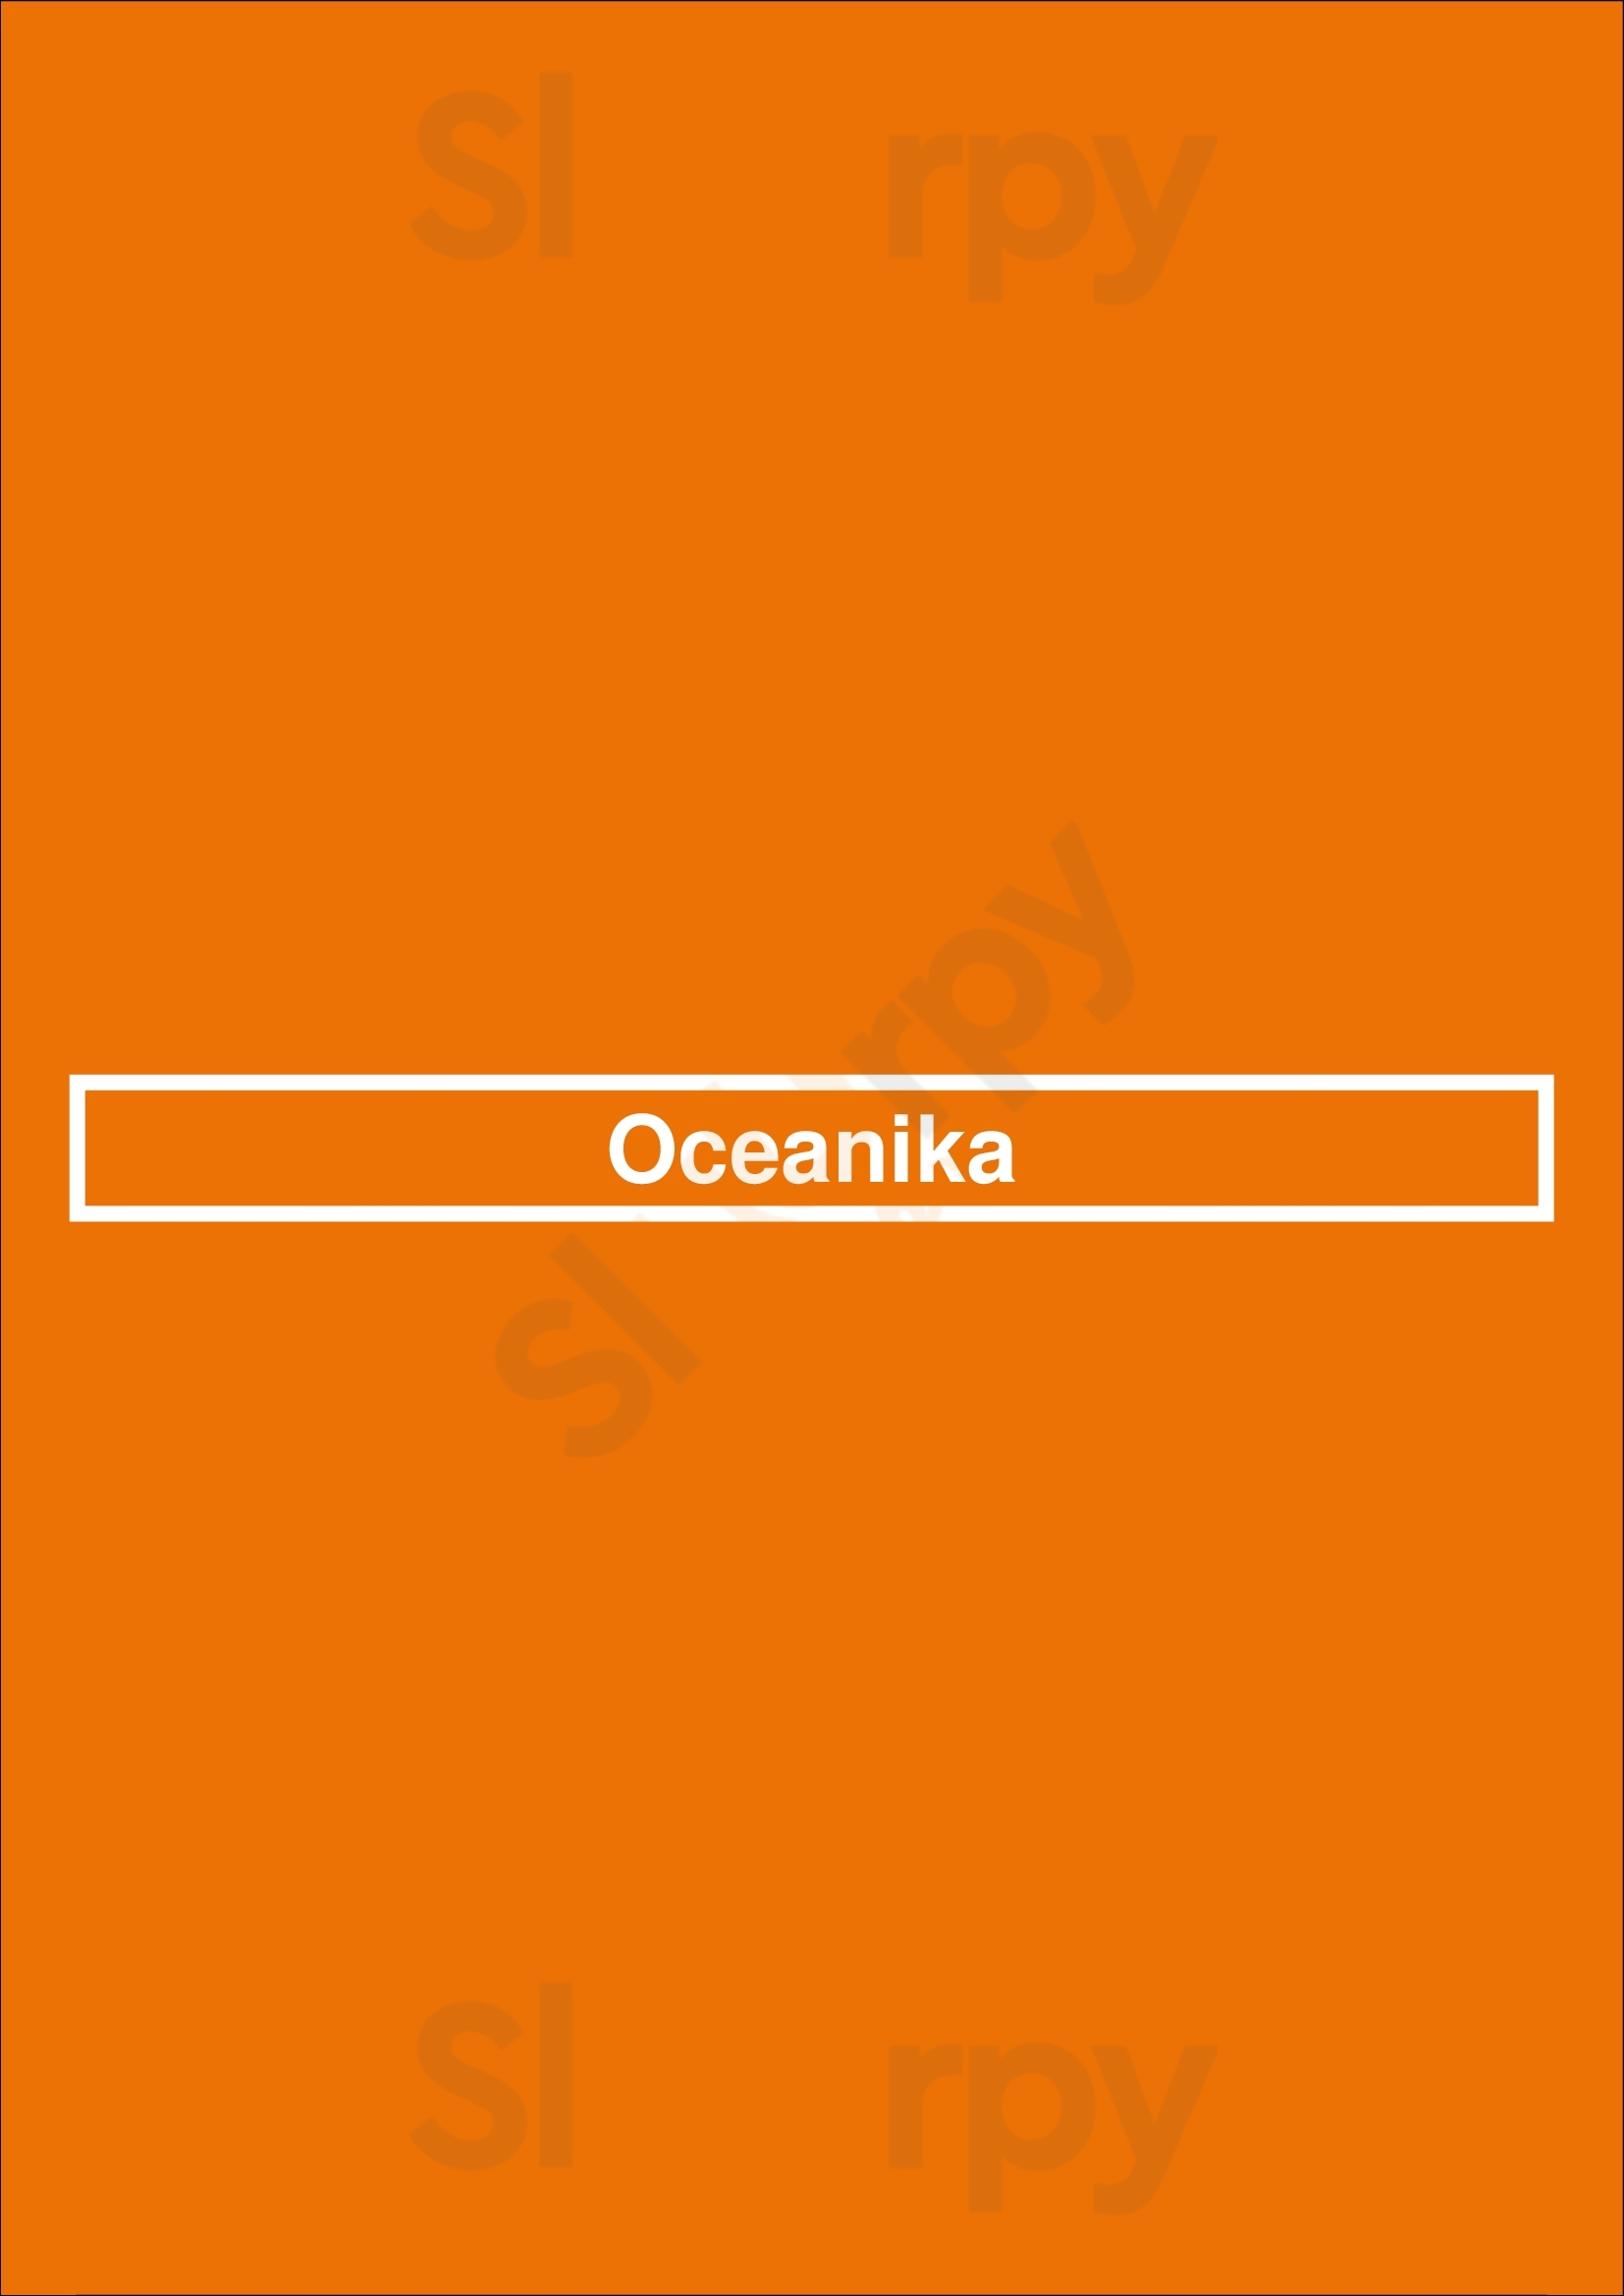 Oceanika Madrid Madrid Menu - 1